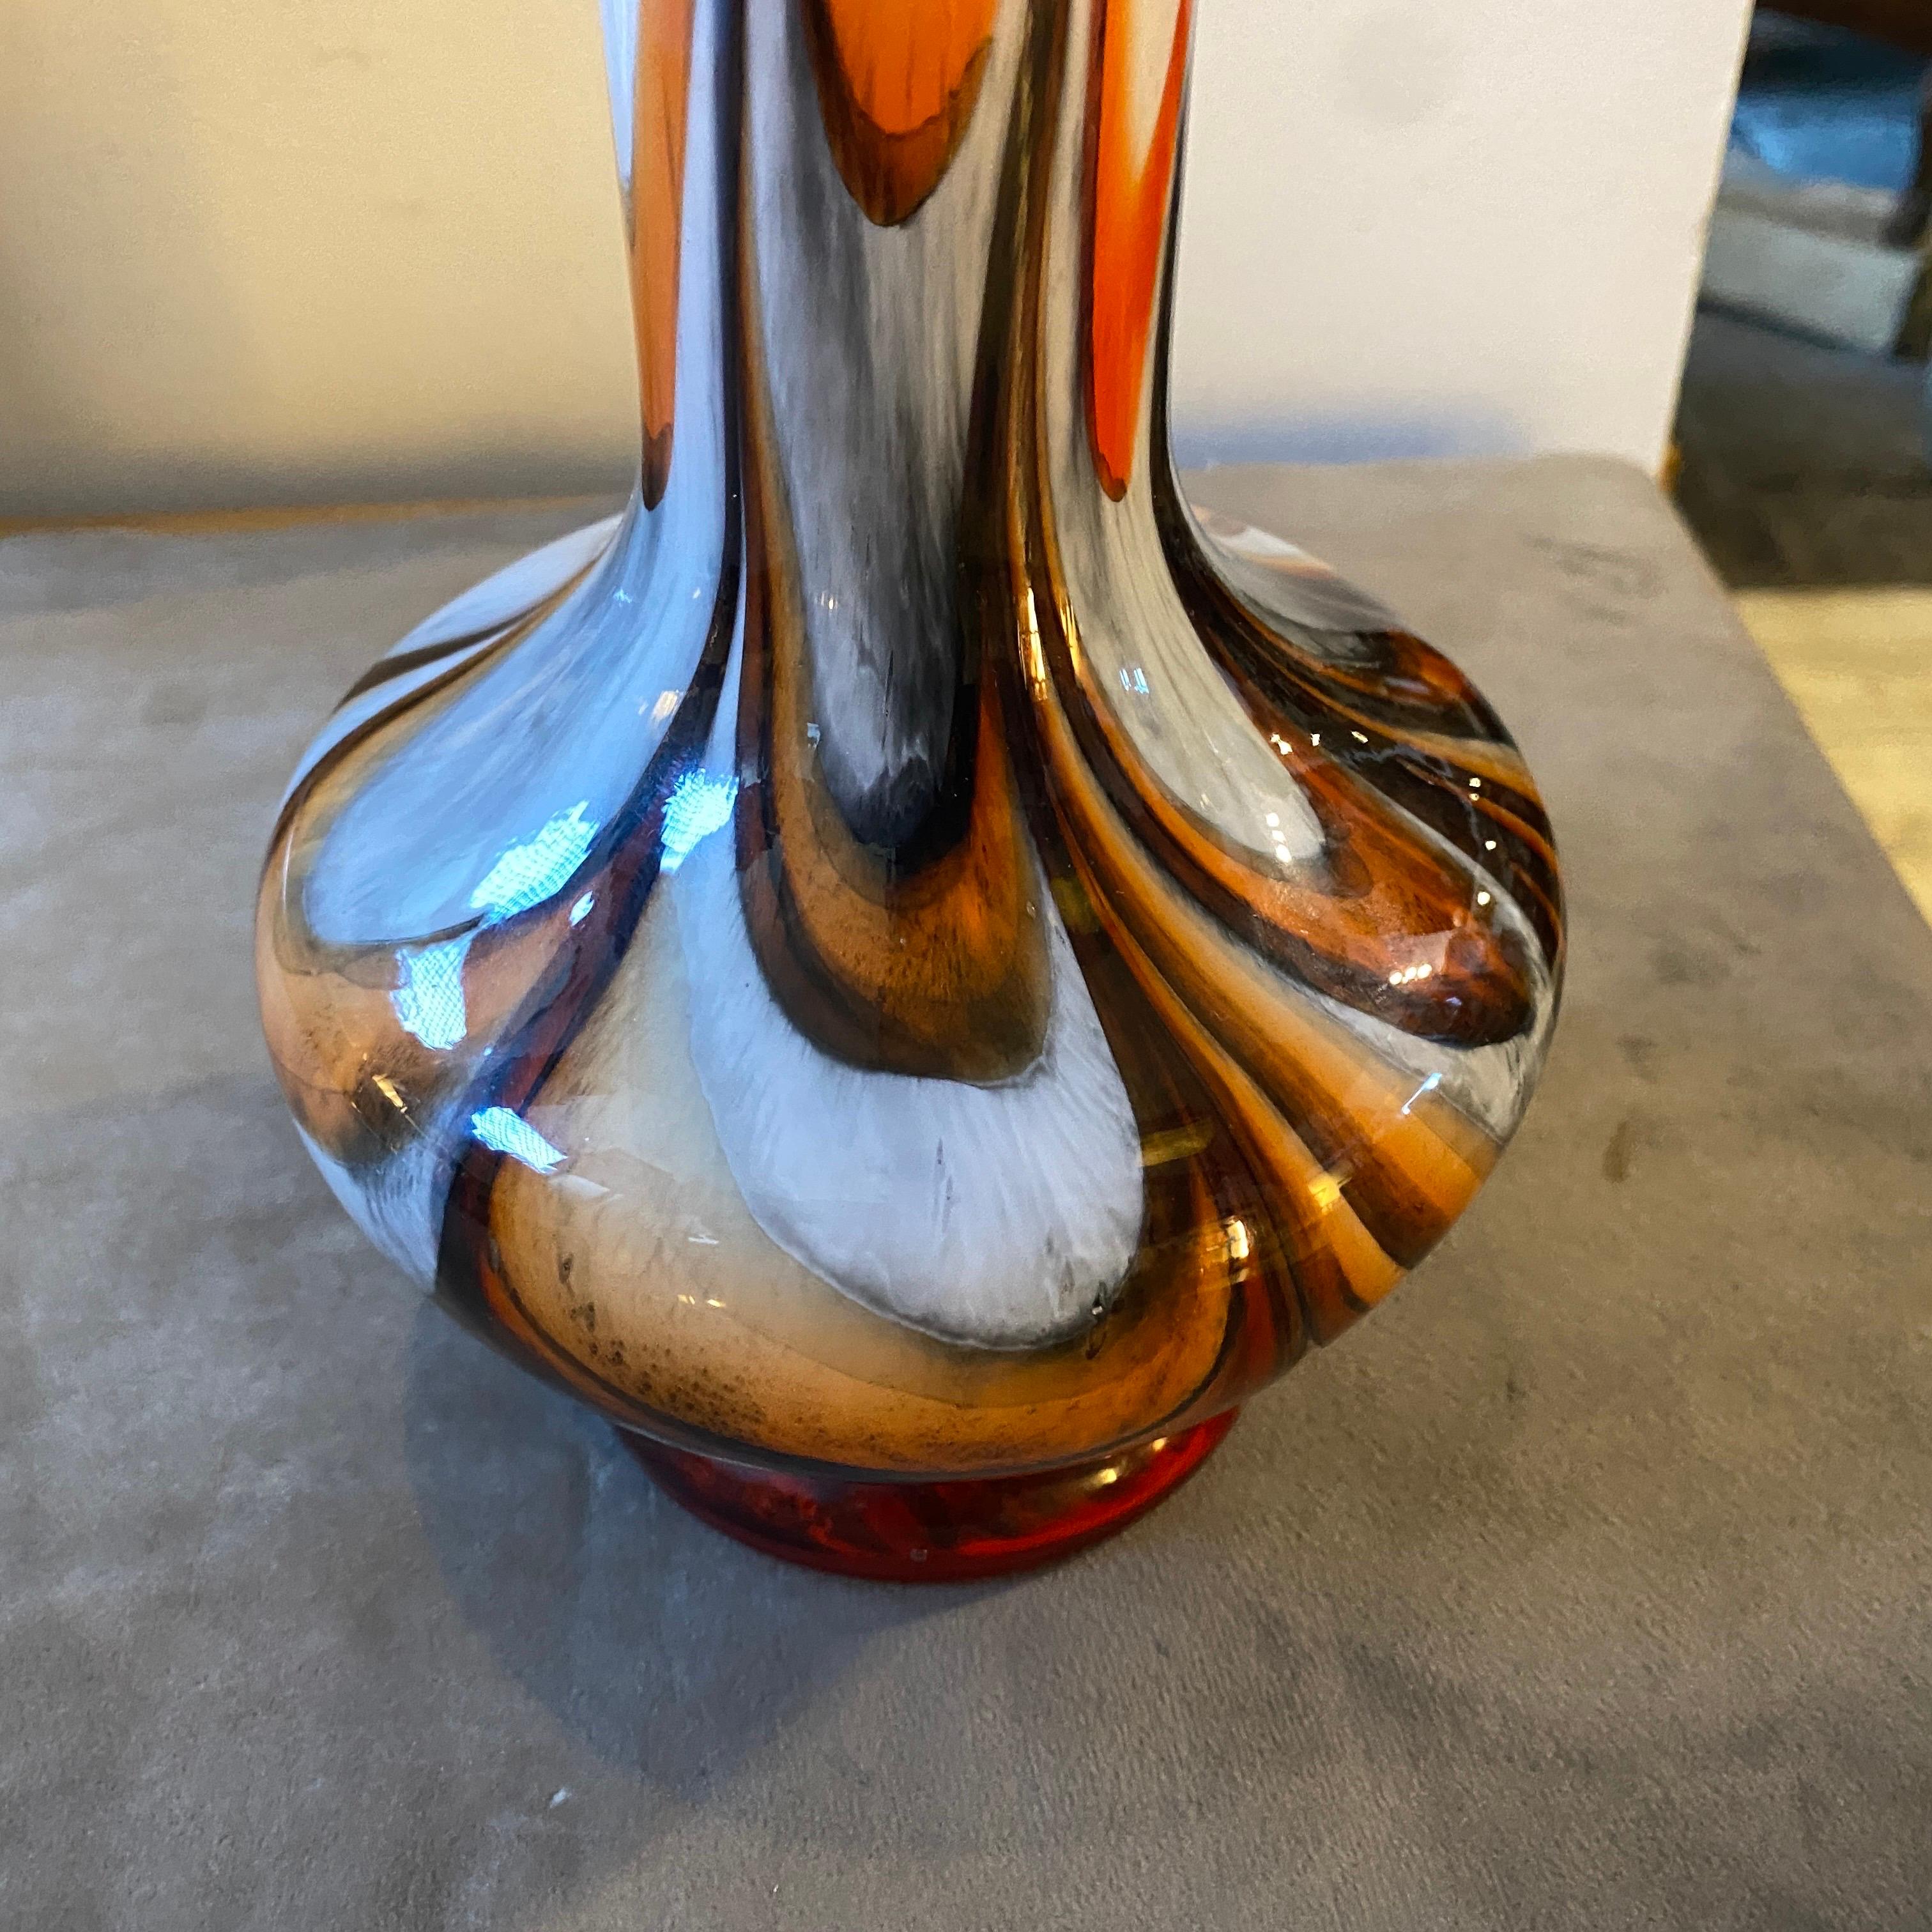 Eine ikonische Vase aus orange-braunem und schwarzem Opalglas, entworfen und hergestellt in Italien in schönem Zustand. Diese Vase verkörpert die kühne und futuristische Designästhetik, die für die Ära des Space Age charakteristisch ist. Carlo